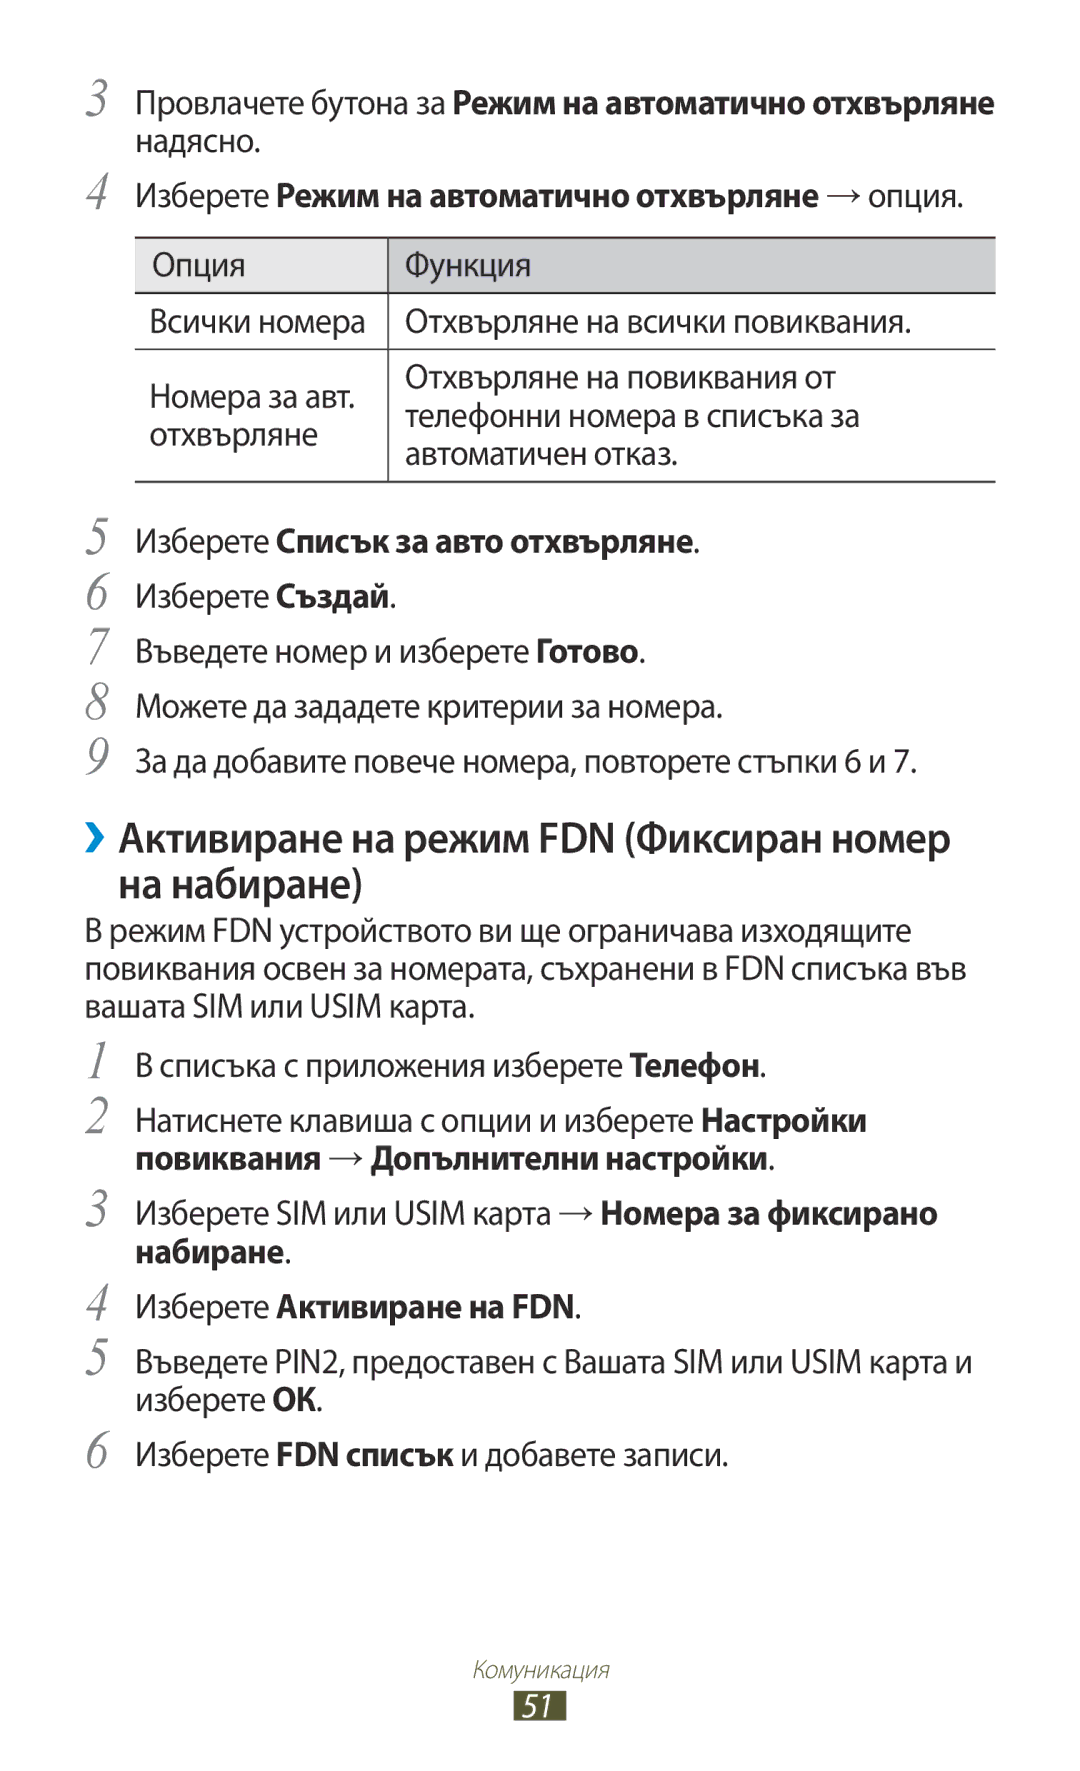 Samsung GT-S7562CWZBGL manual ››Активиране на режим FDN Фиксиран номер на набиране, Изберете Списък за авто отхвърляне 